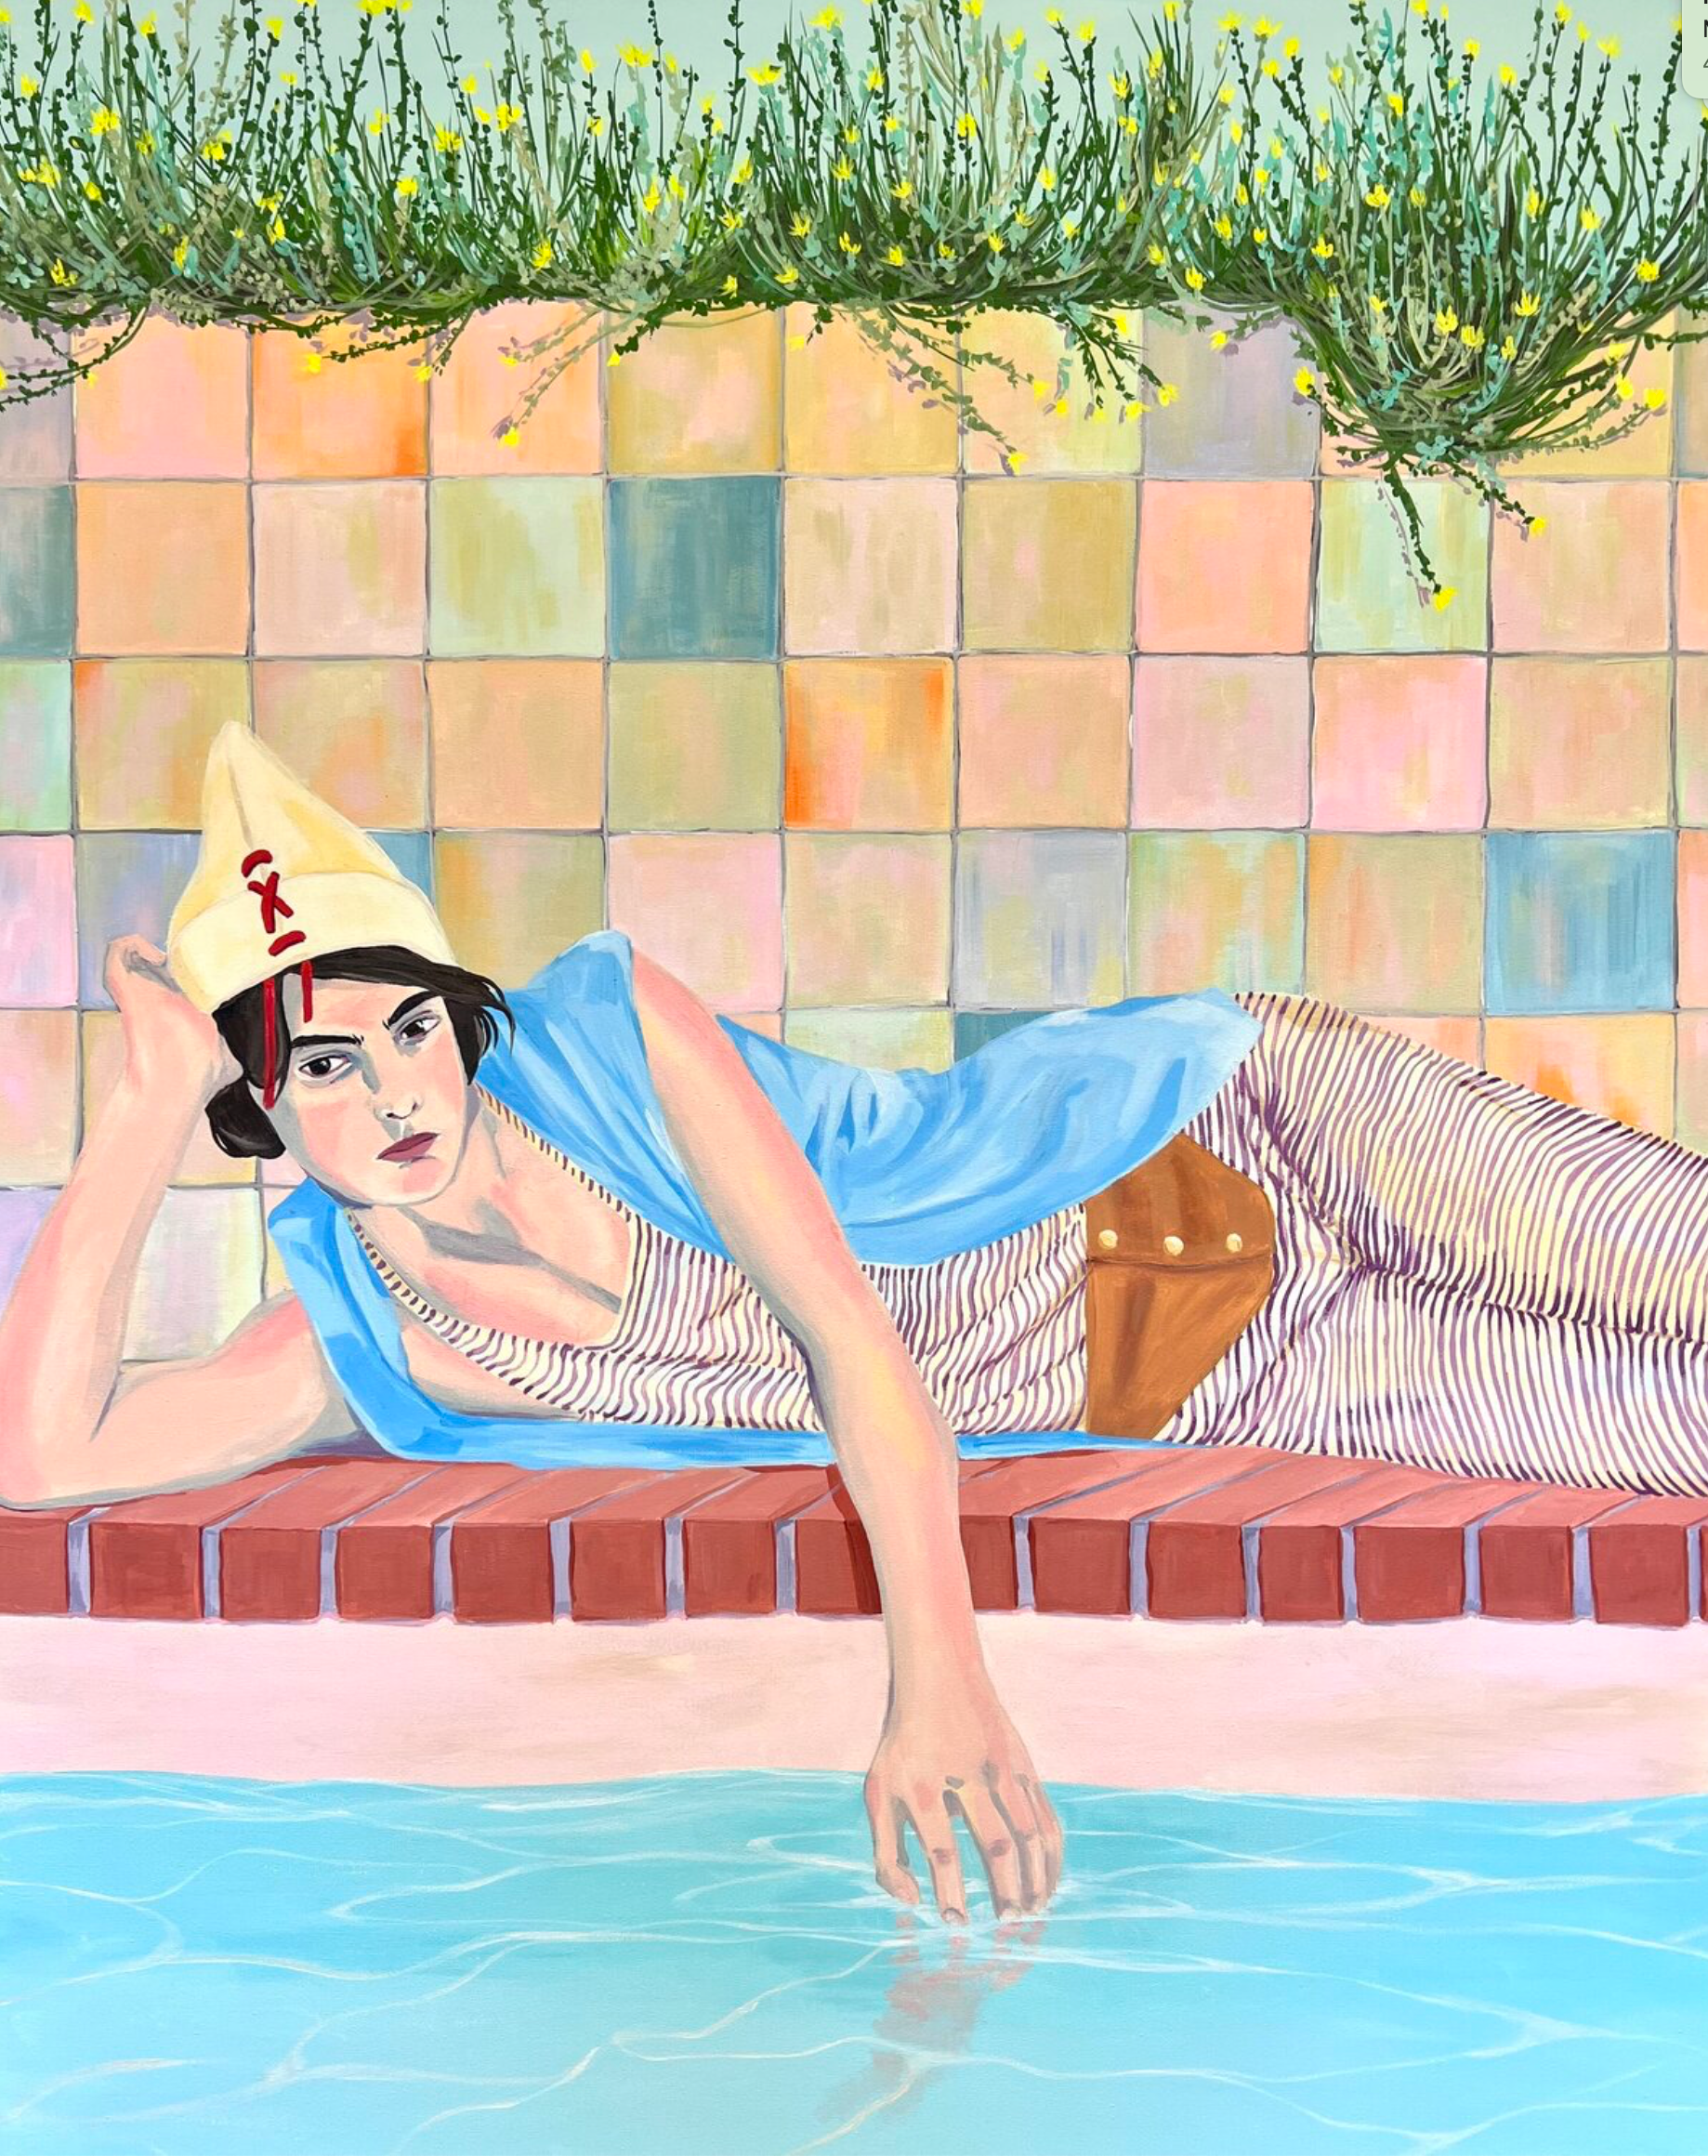 Vanessa van Meerhaeghe ist eine in Brüssel ansässige Malerin. Ihr Frauenporträt Gemälde "Pool poetry" zeigt ein atemberaubendes Porträt einer jungen Frau am farbenfrohen Pool. Vanessa liebt es, mit kühnen Mustern zu arbeiten. 